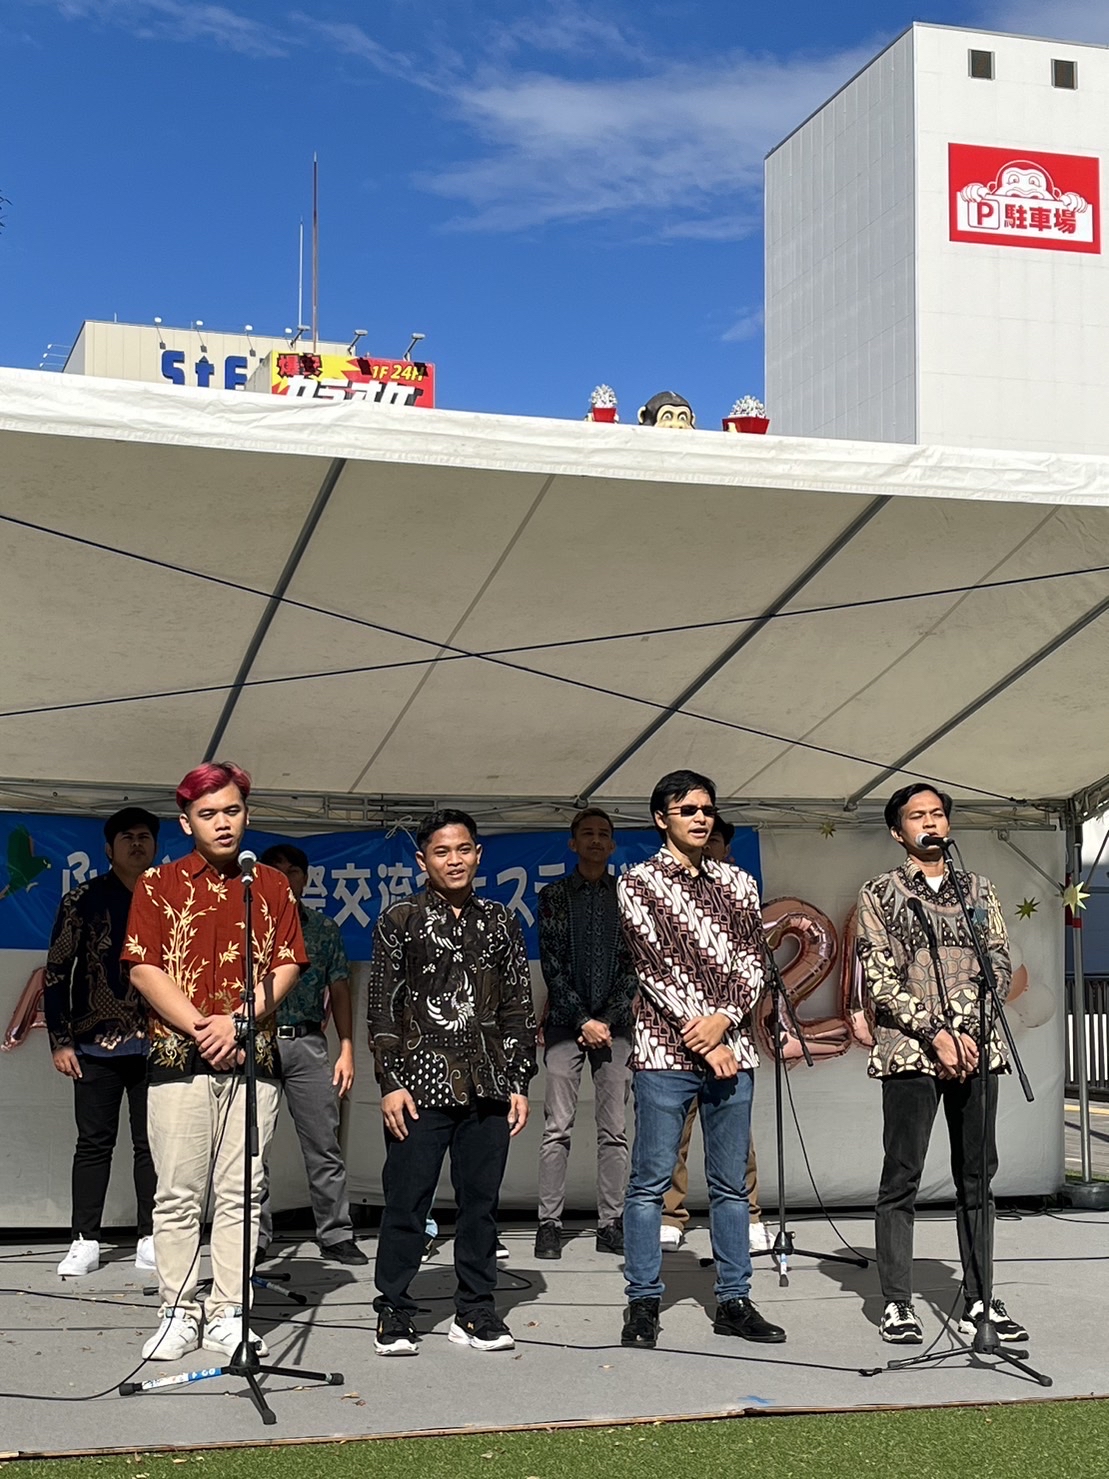 10月下旬の青空の下、神奈川県にて「ふじさわ国際交流フェスティバル」が開催されました。